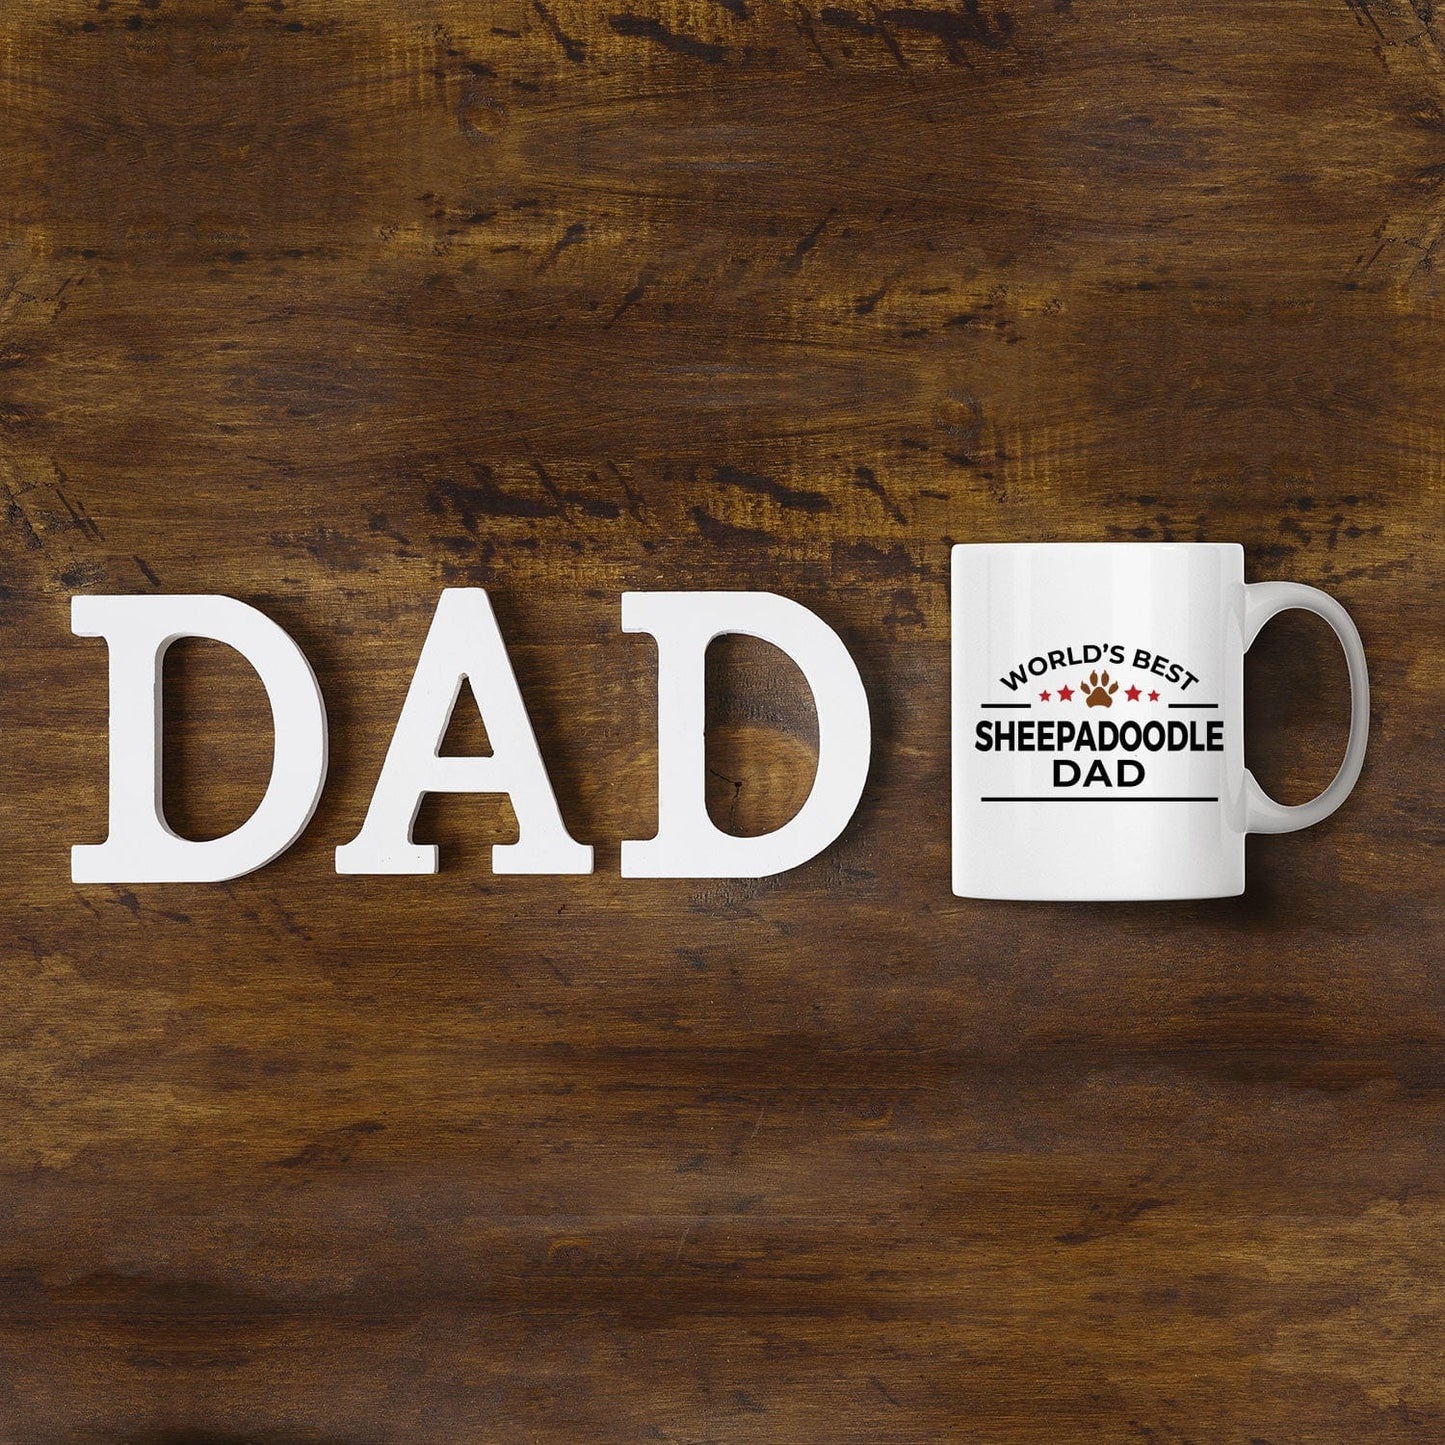 Sheepadoodle Dog Dad Coffee Mug